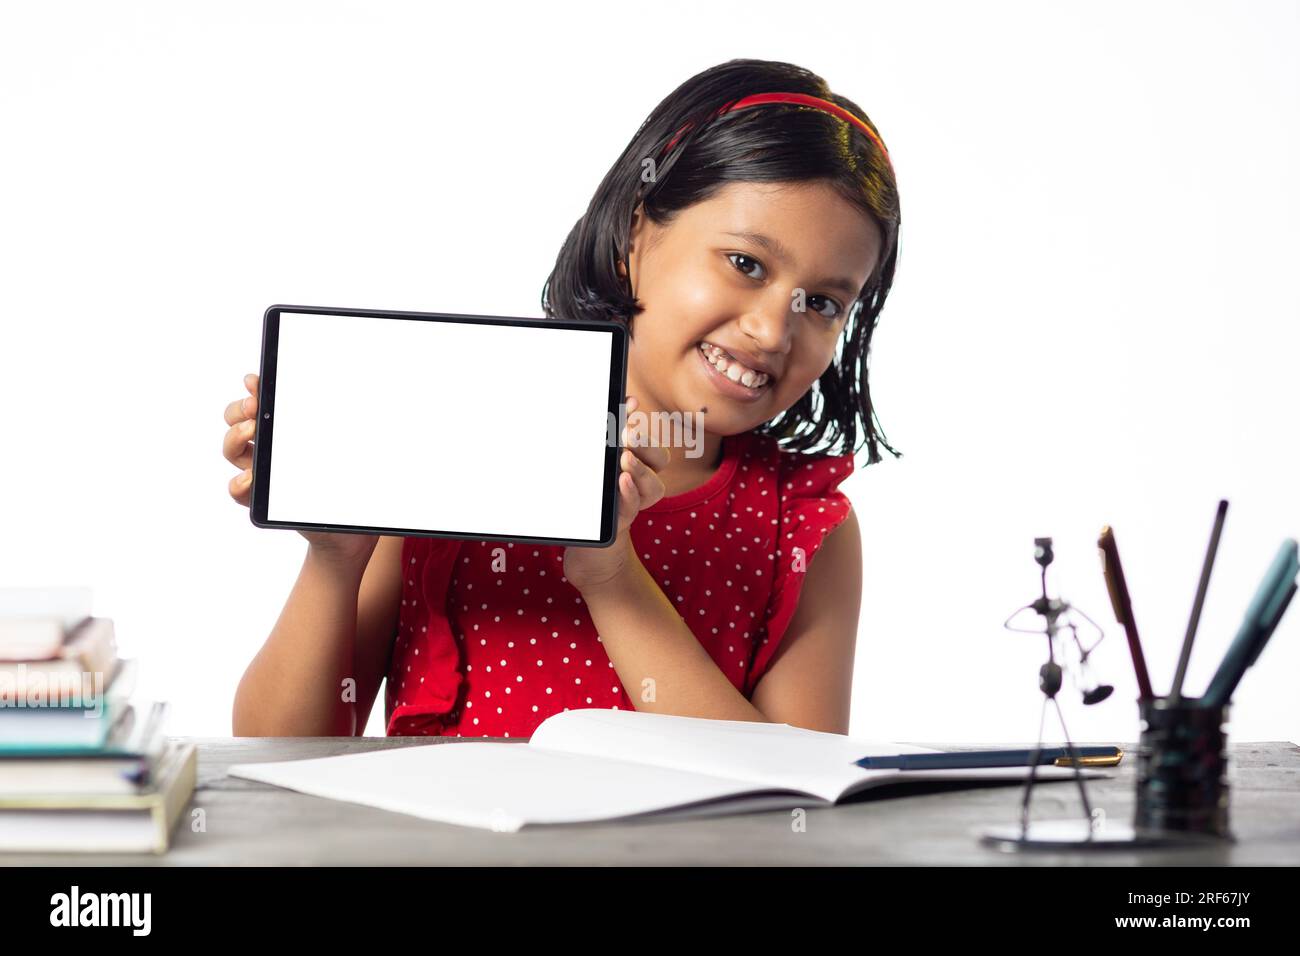 Ein hübsches indisches Mädchen, das studiert und auf dem Tisch auf weißem Hintergrund einen leeren Bildschirm mit Tablet zeigt Stockfoto